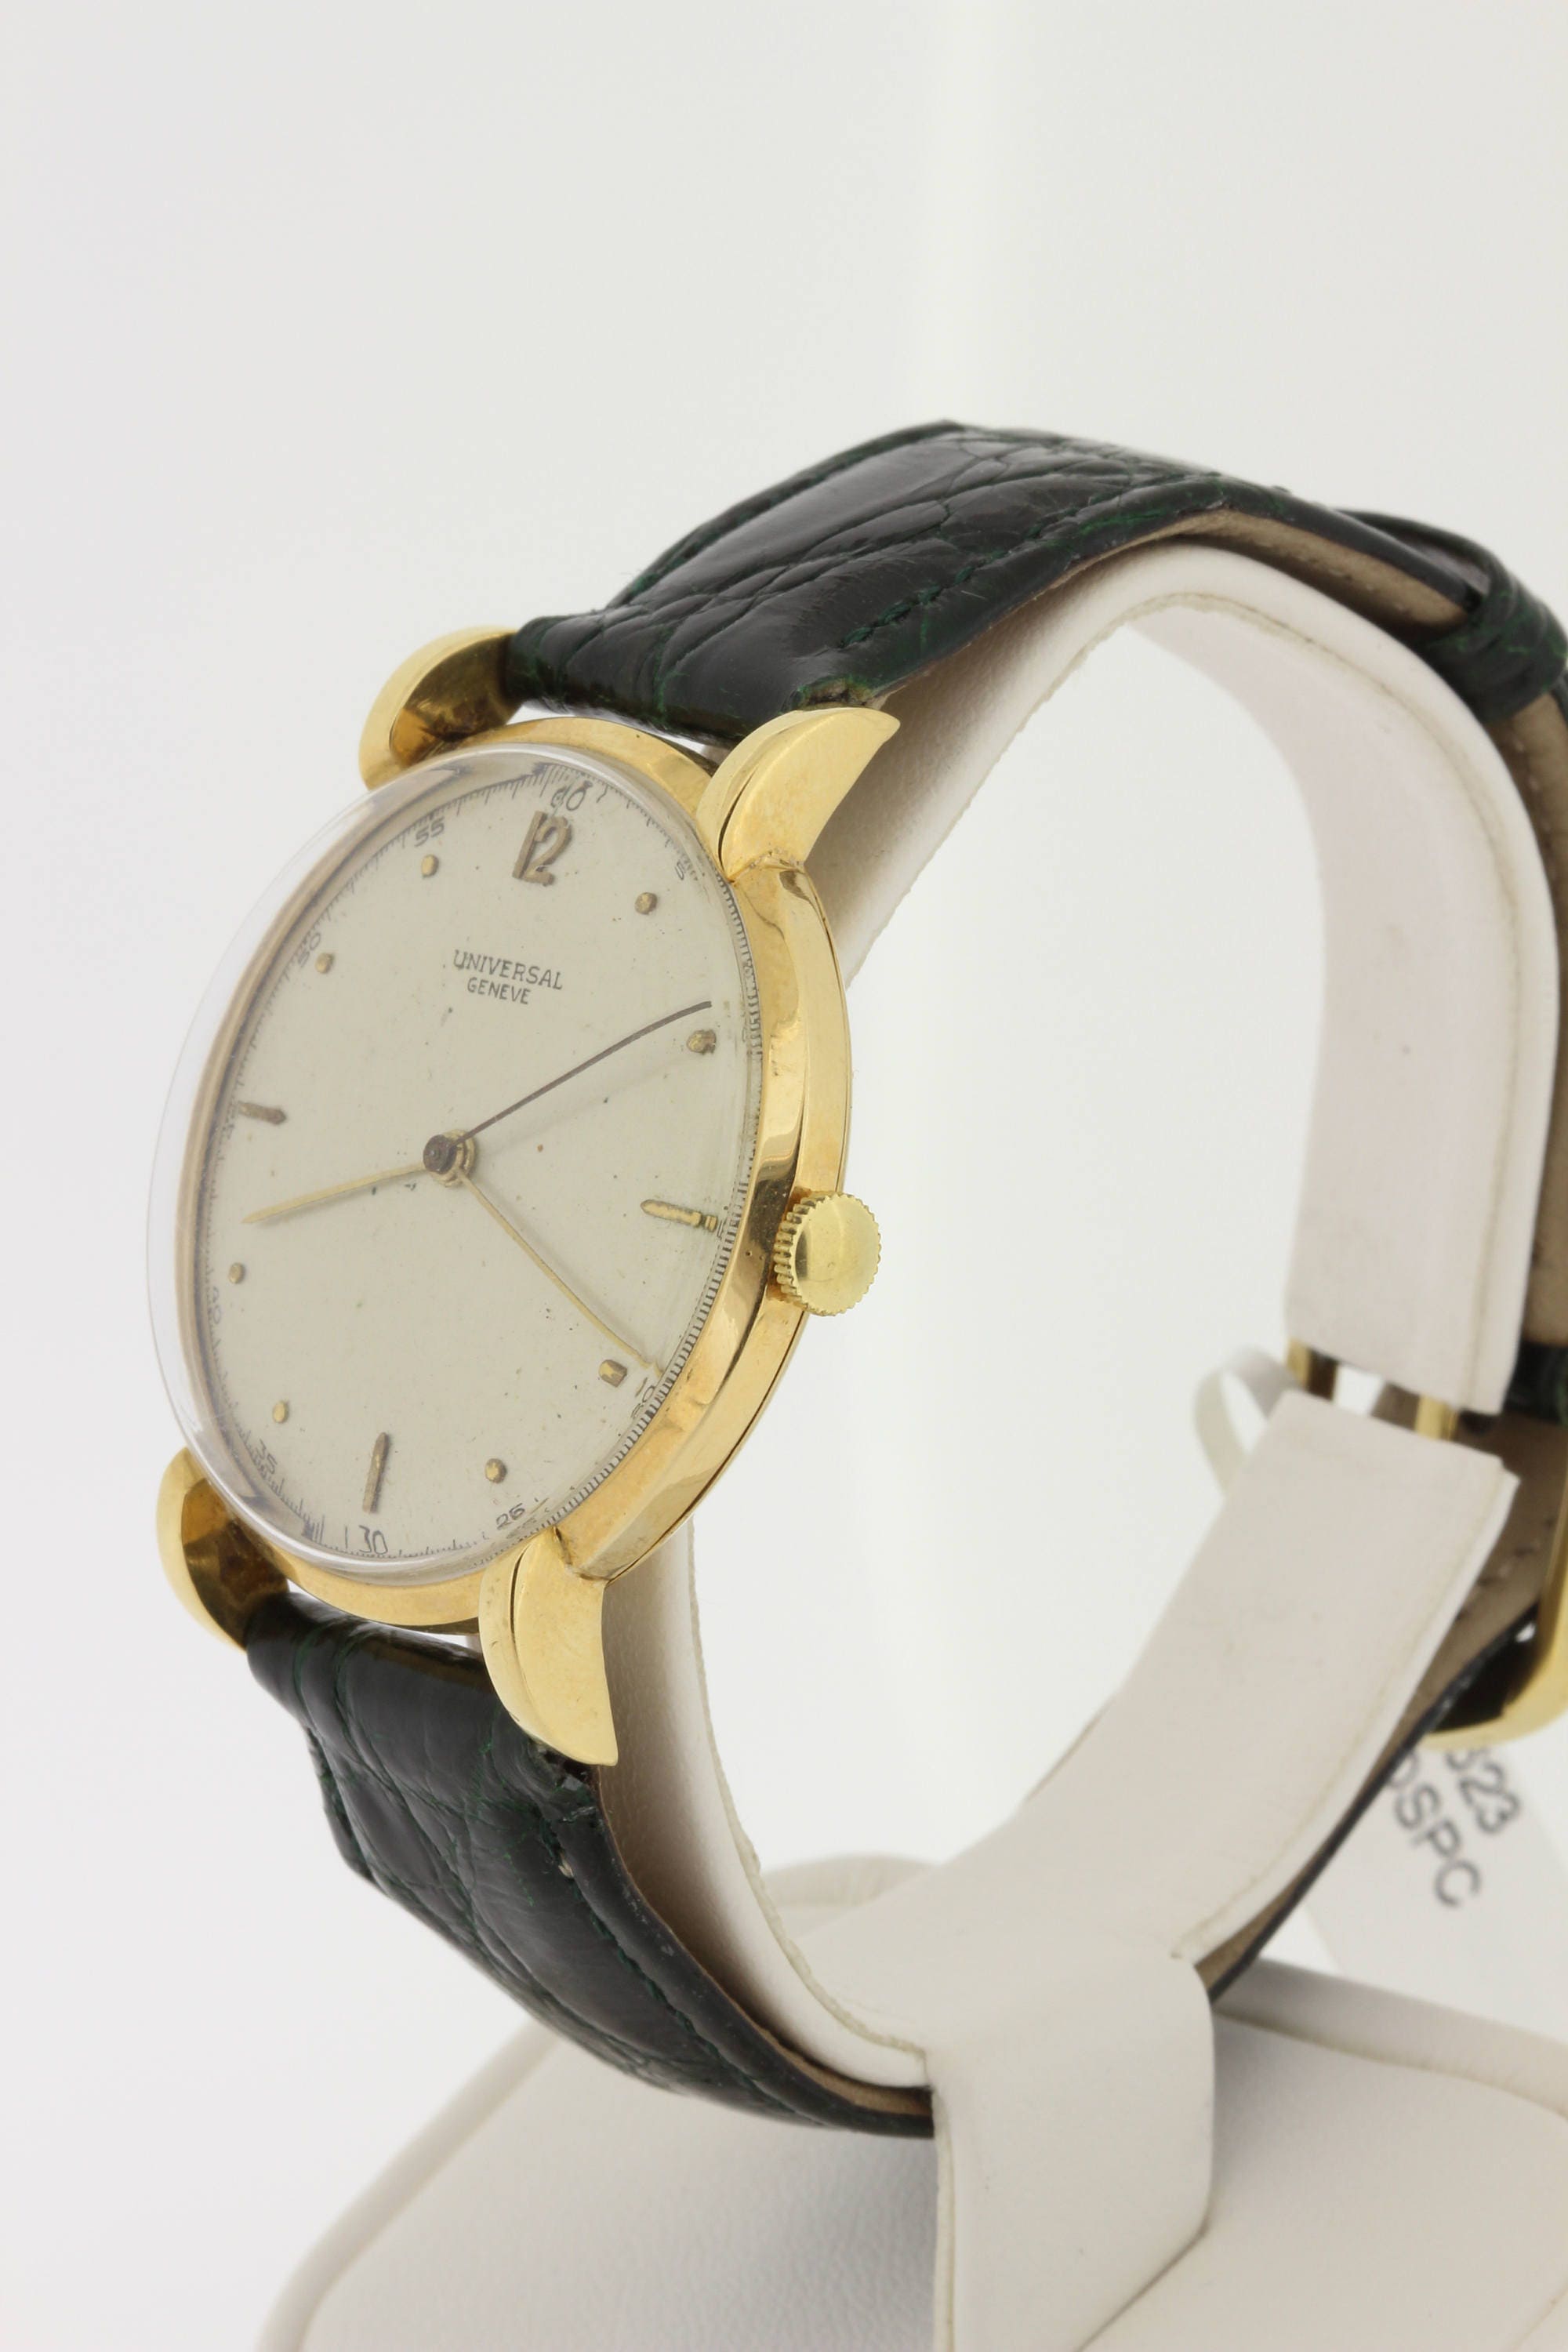 18K Yellow Gold Universal Geneve Wrist Watch - Etsy